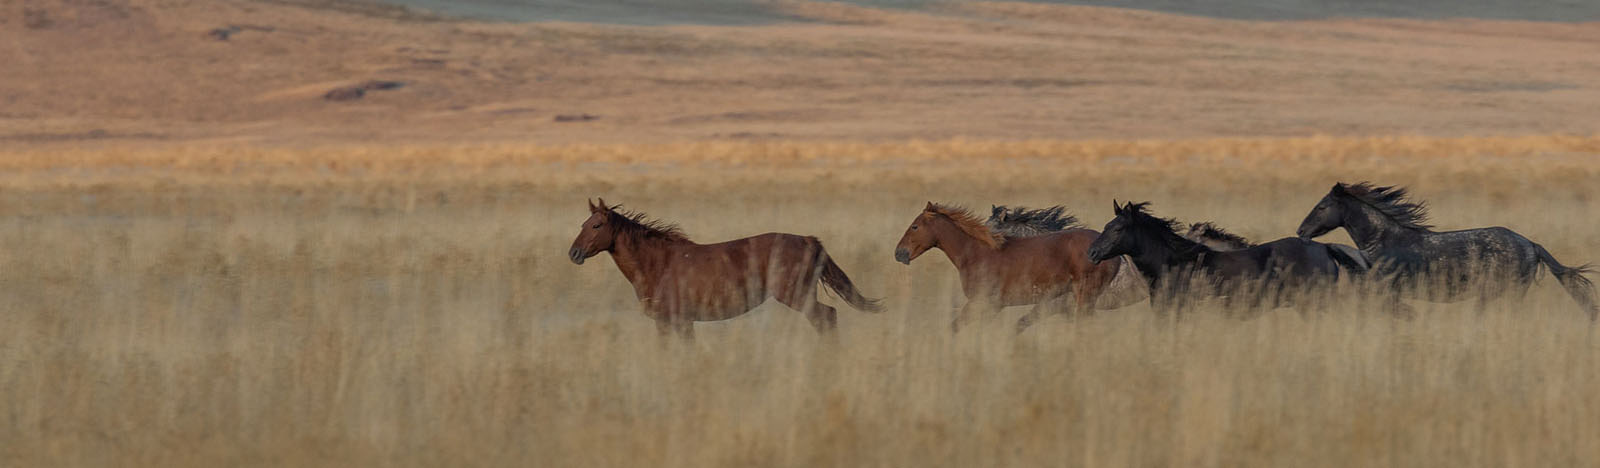 Horses running in field